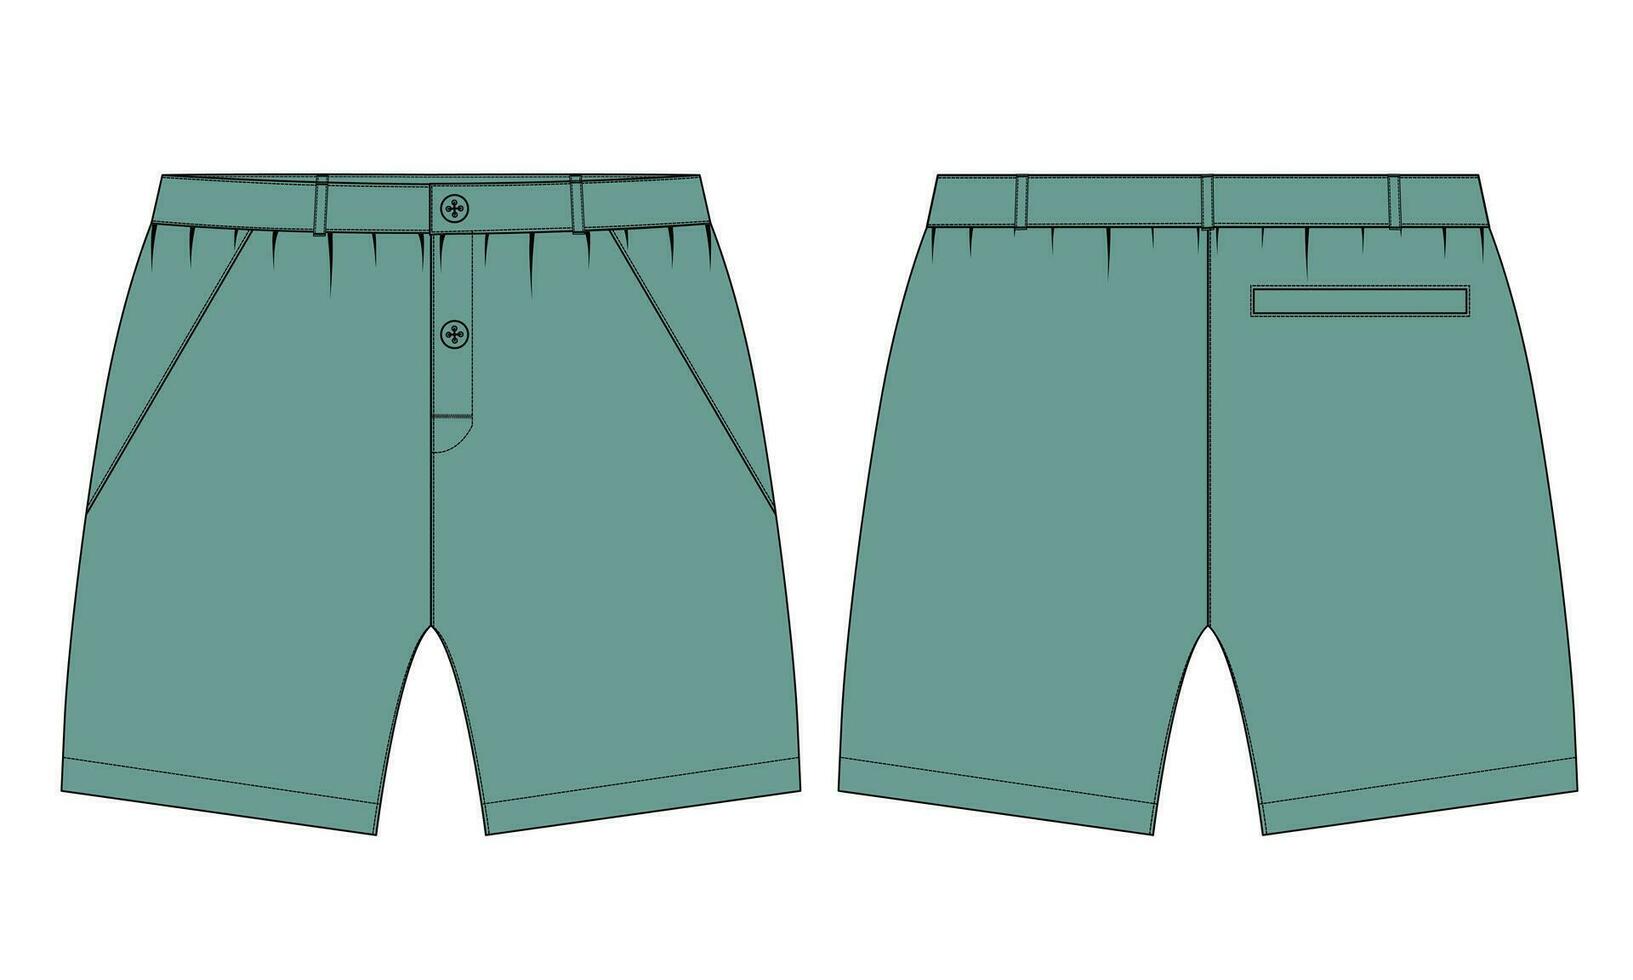 shorts hijgen vector illustratie sjabloon voor Mannen en jongens